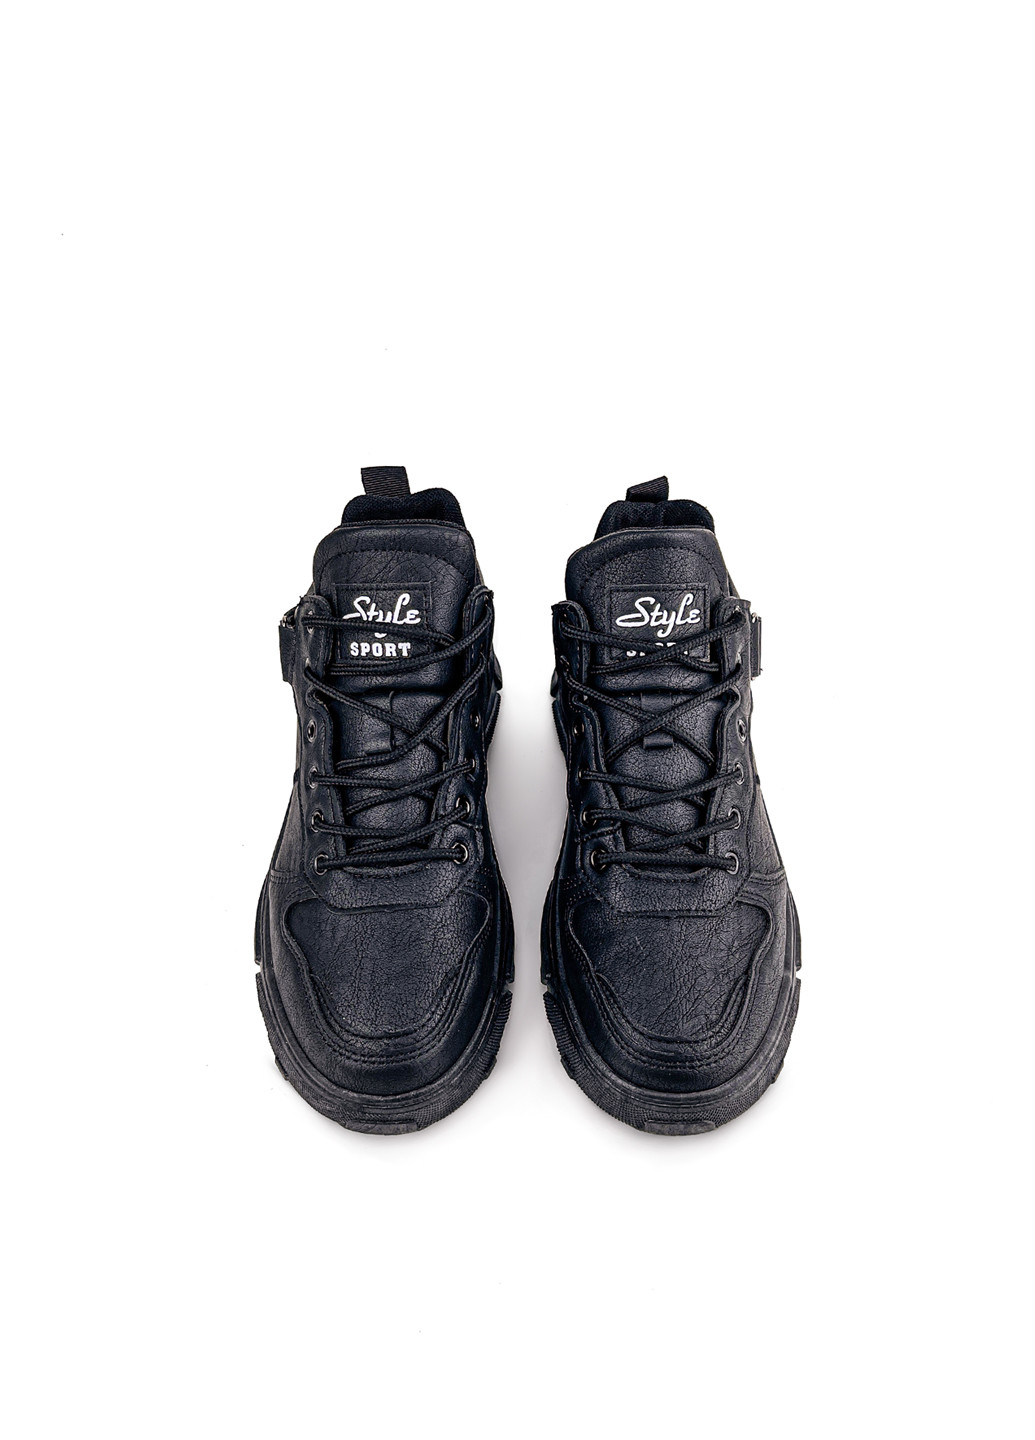 Черные осенние кожаные мужские ботинки черные на каждый день Fashion